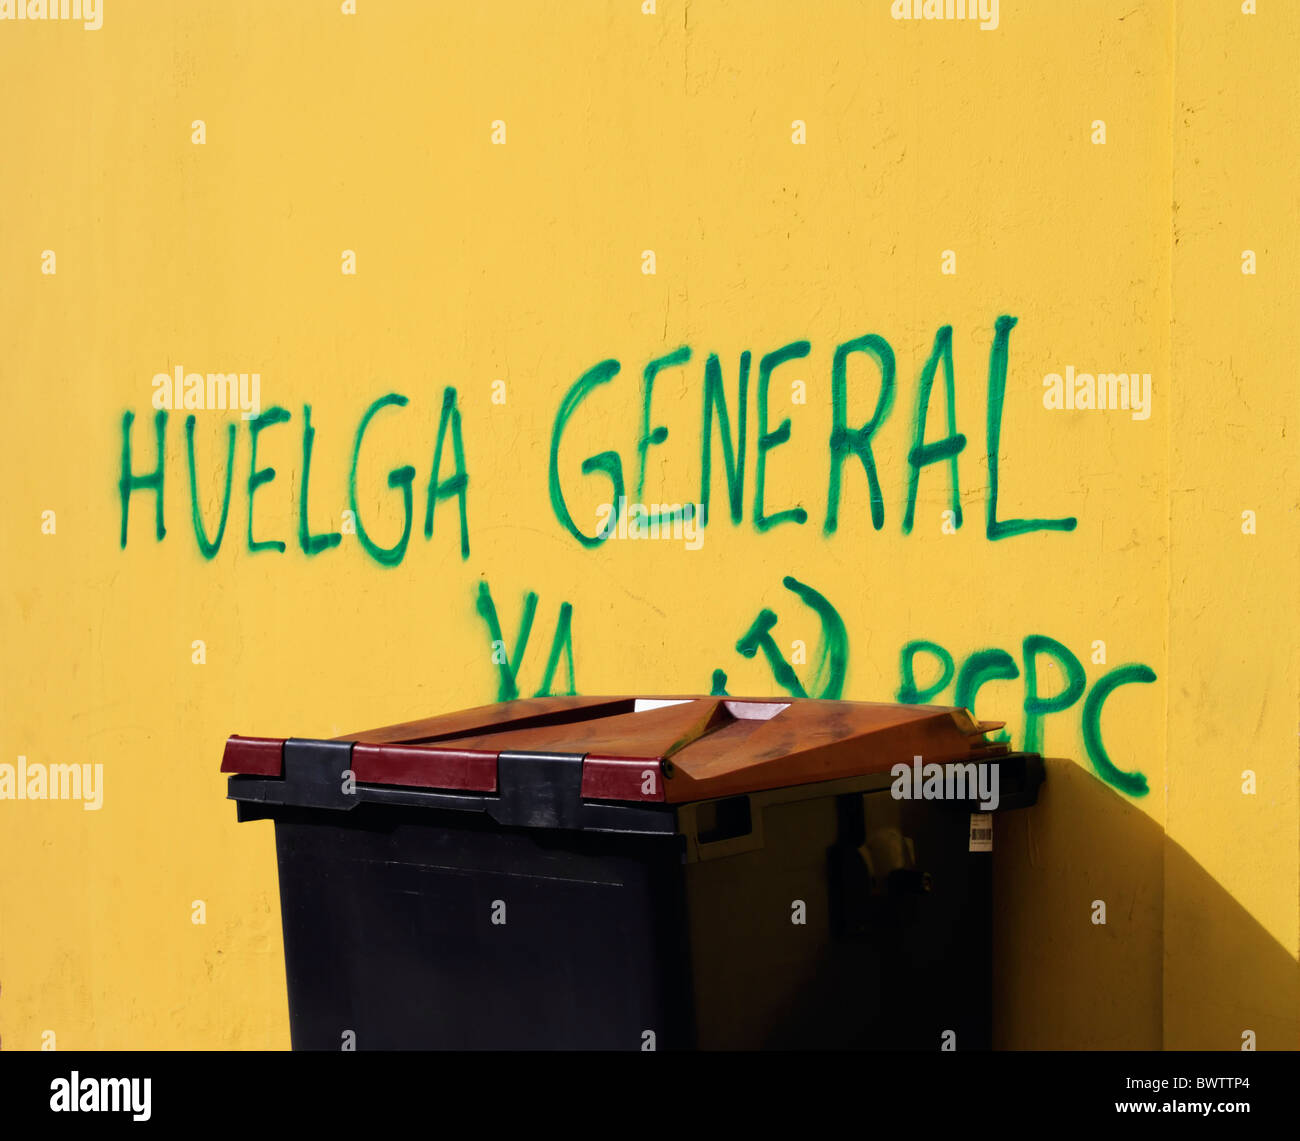 Huelga General ya (general strike now) sprayed on wall in Spain Stock Photo